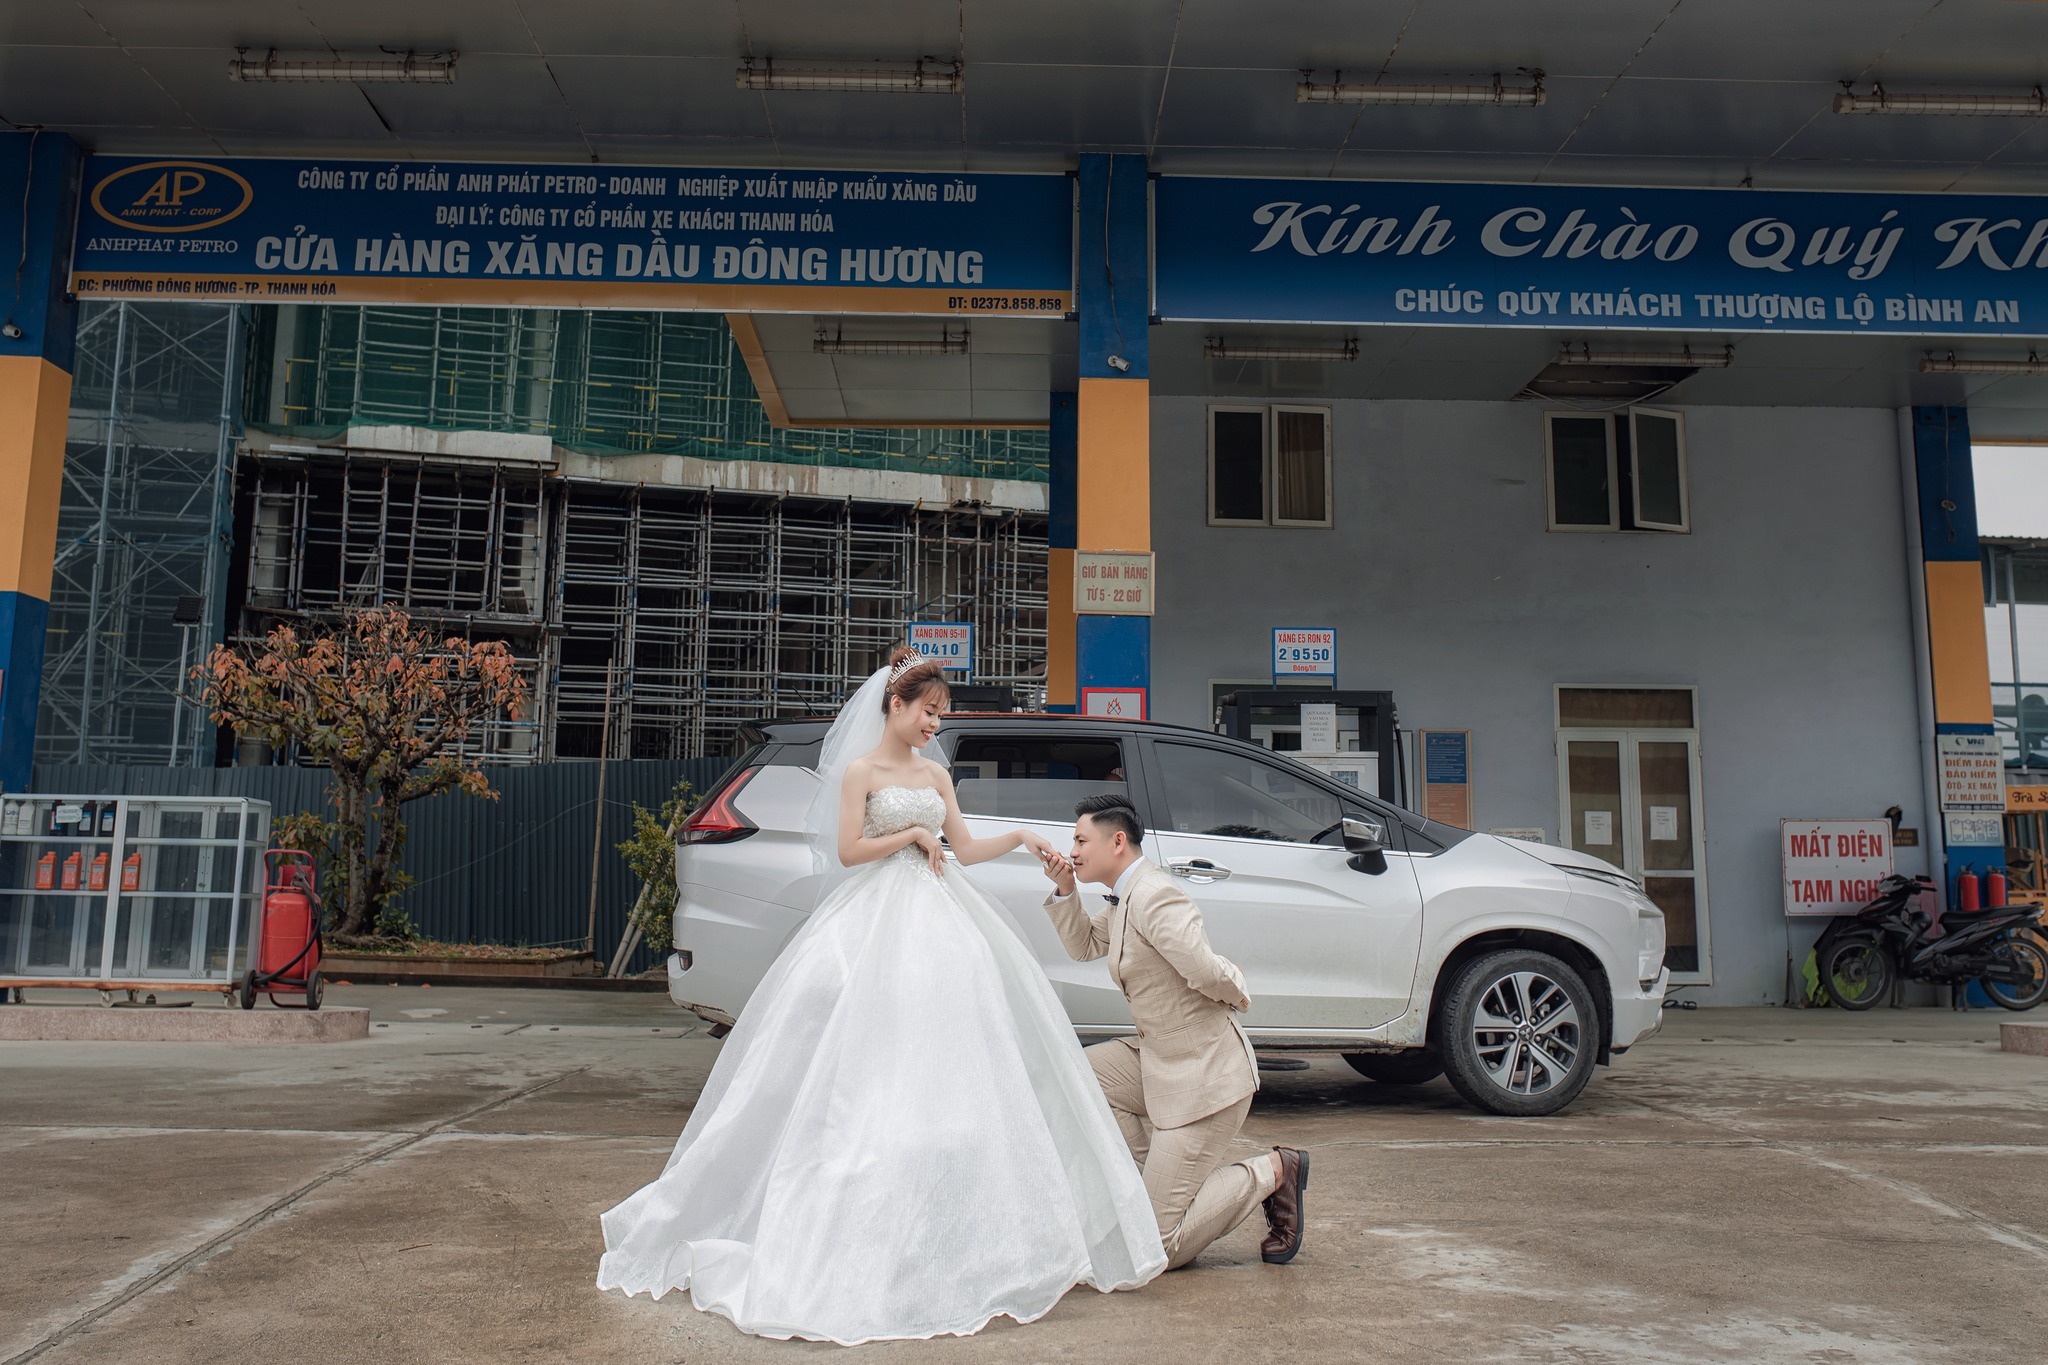 Bộ ảnh cưới 'đắt đỏ' của cặp đôi ở trạm xăng thu hút triệu view